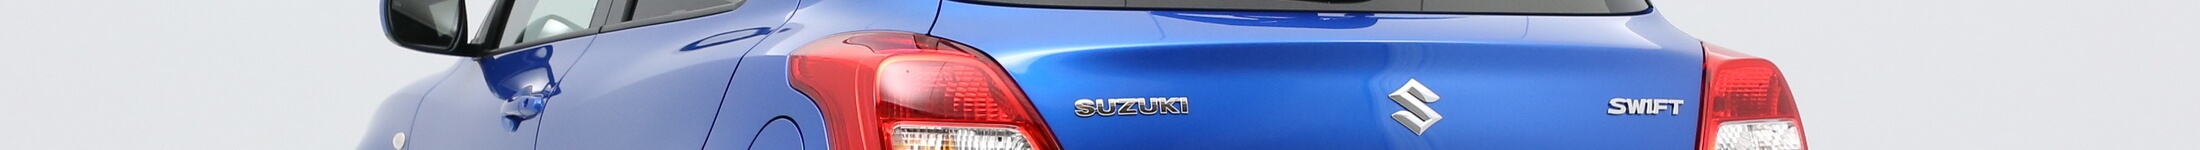 Nowe Suzuki Swift na abonament i wynajem długoterminowy - topbanner modelu